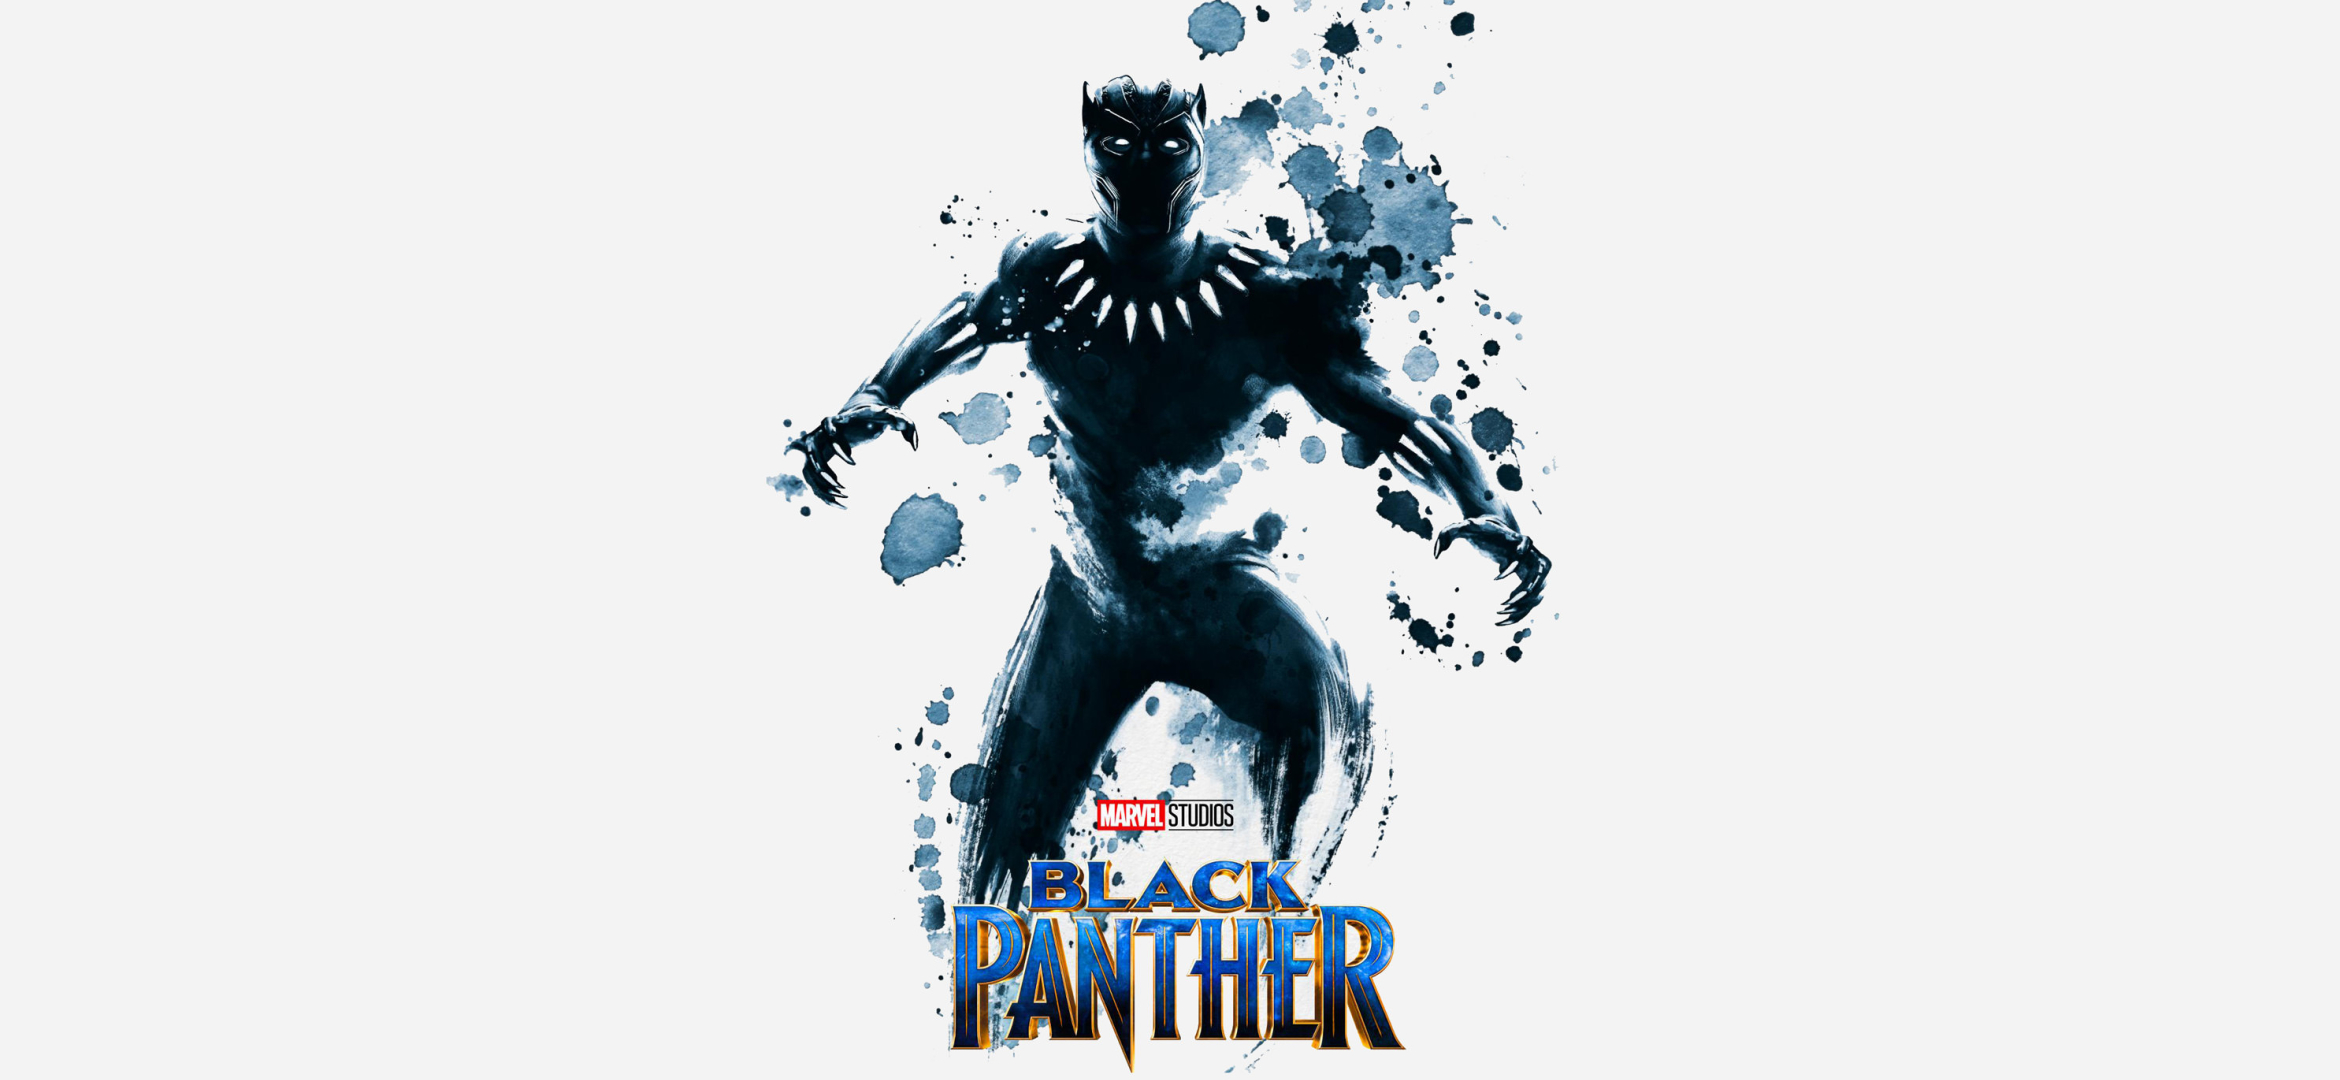 free download black panther movie full free